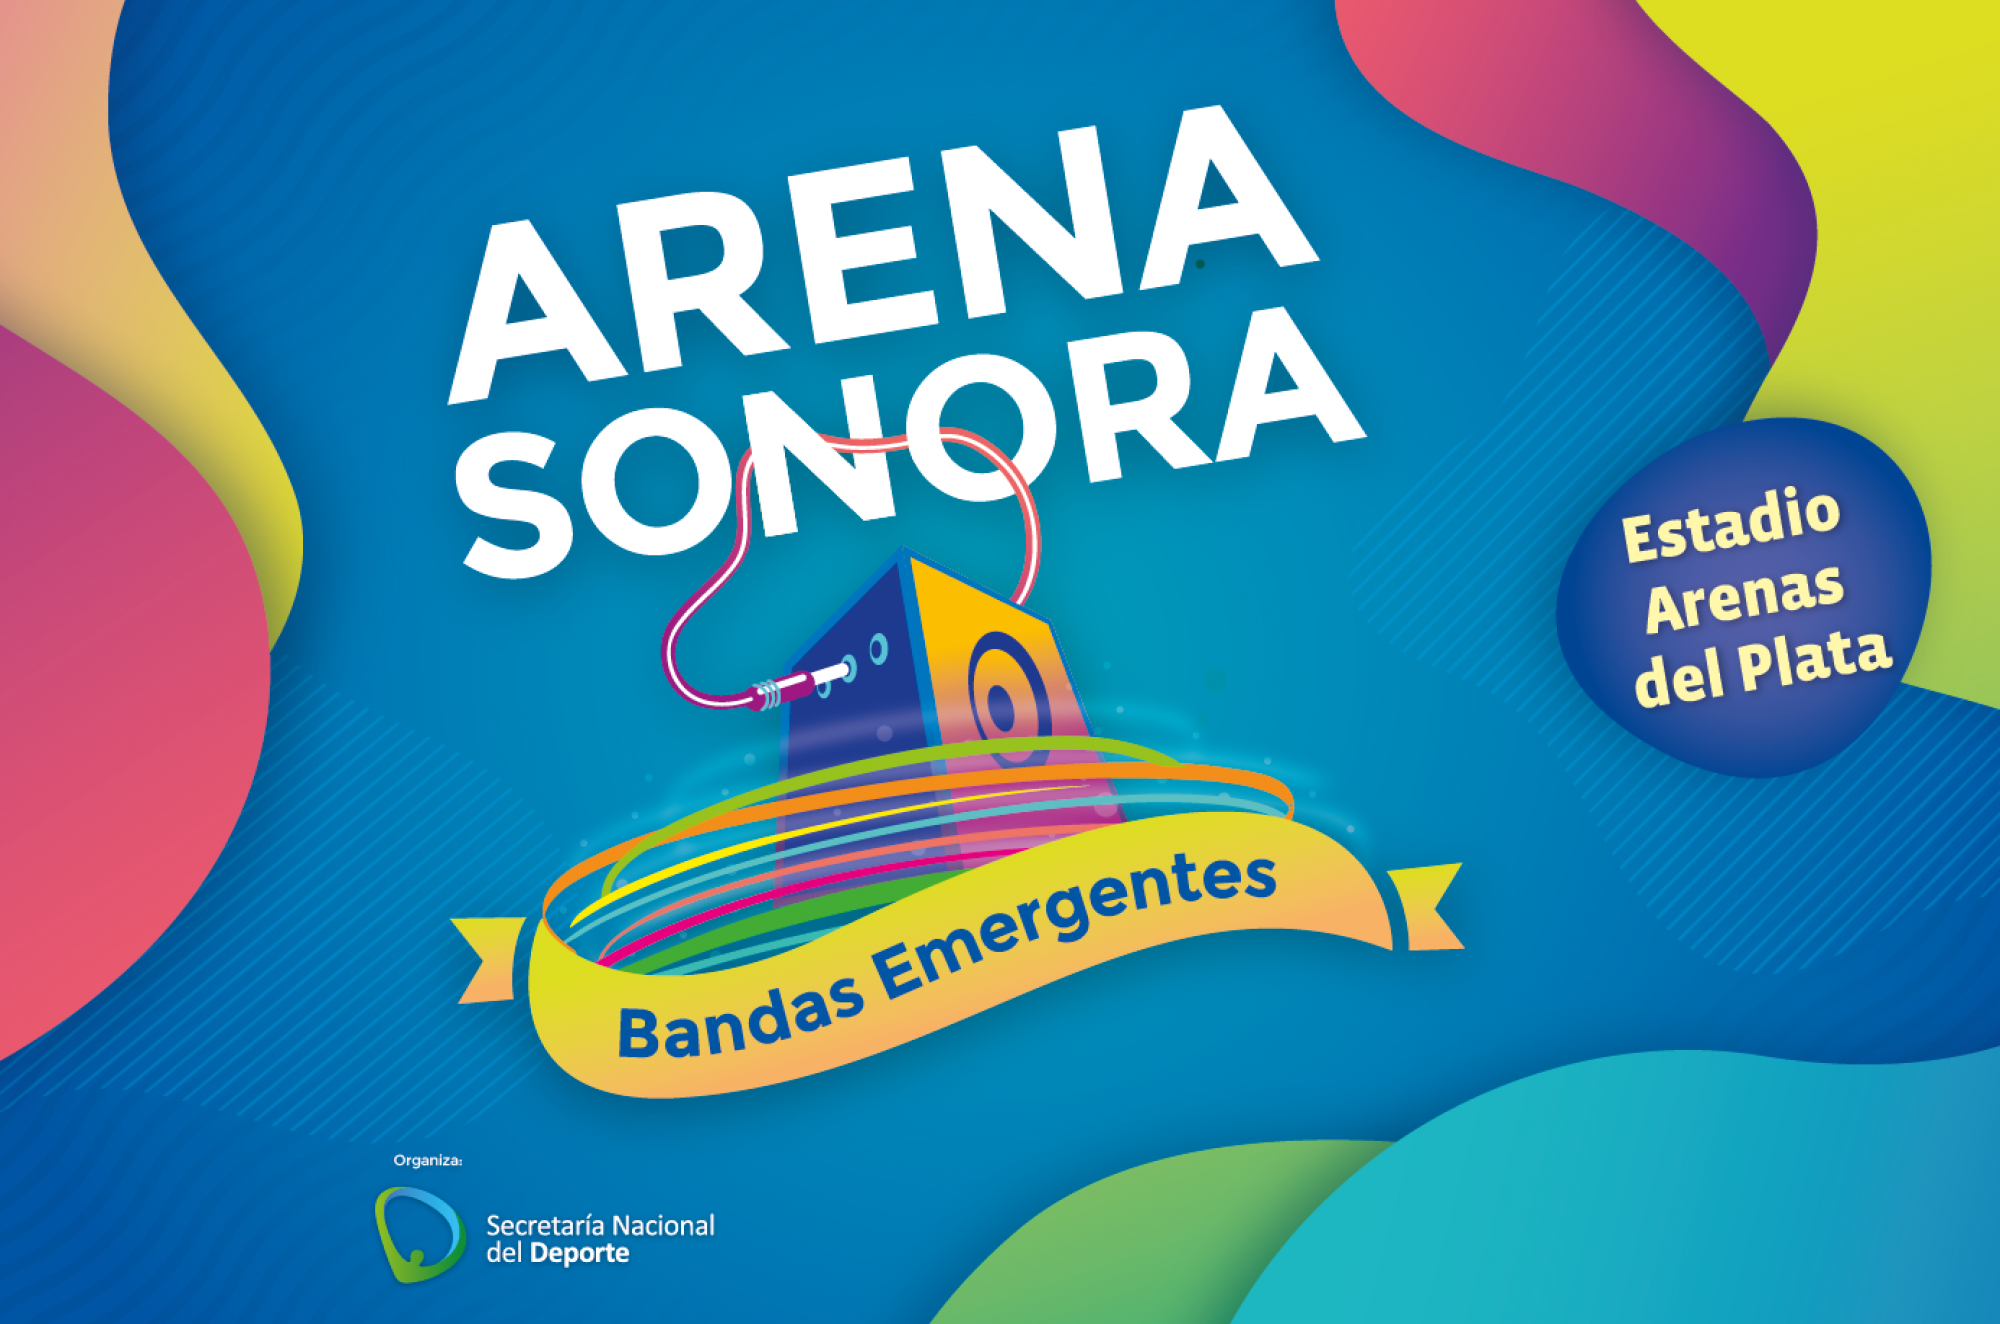 Agenda completa del certamen Arena Sonora.